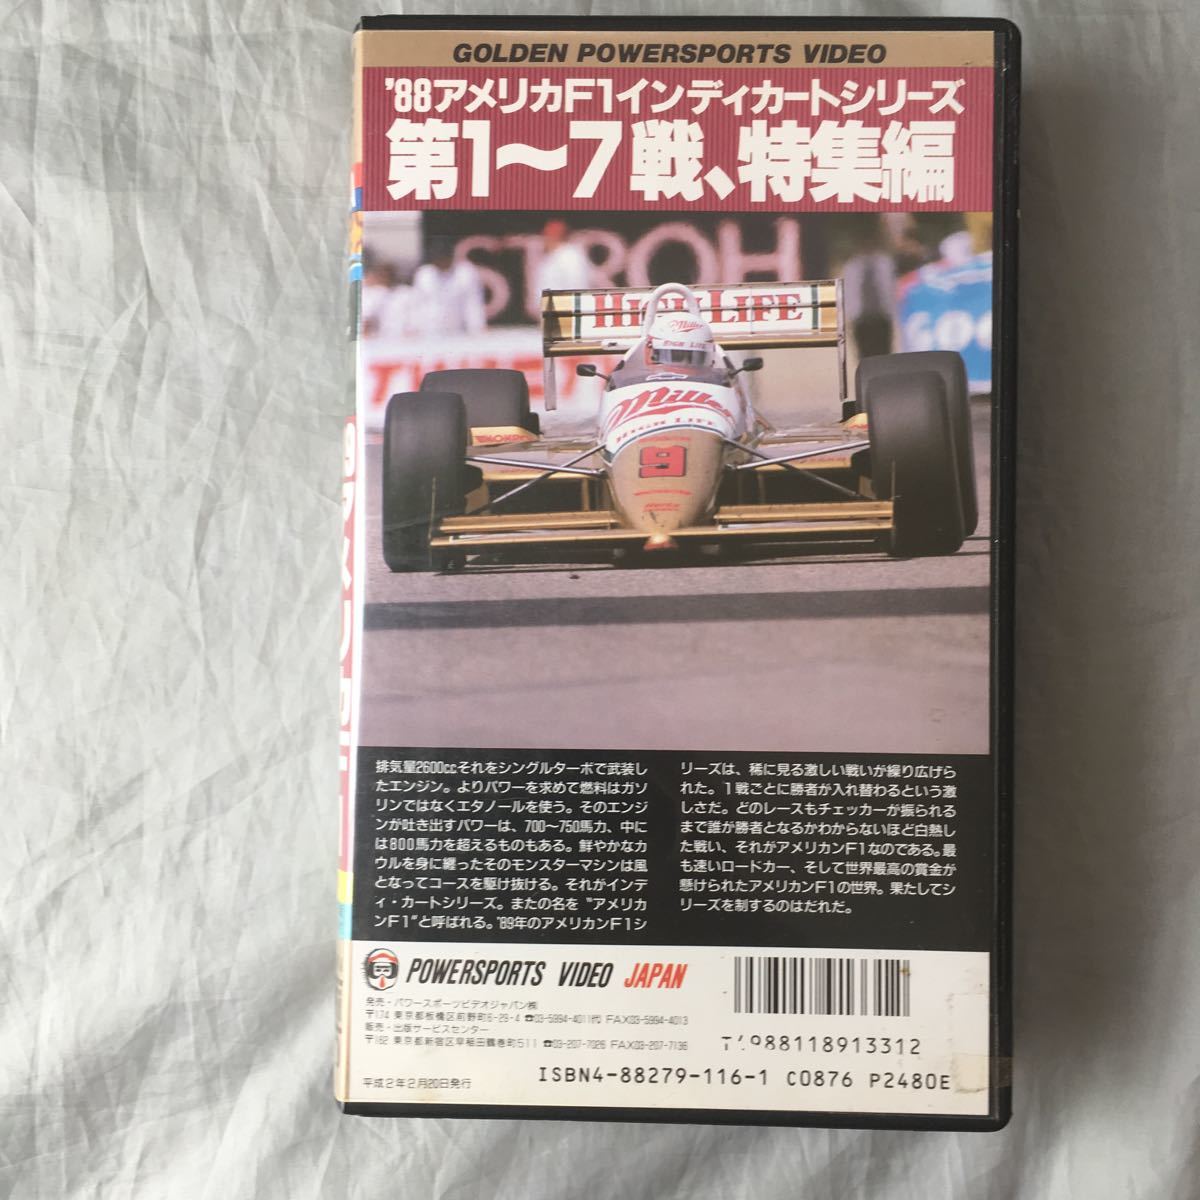 #1989 год Indy * Cart игрок право передний половина битва R1~R7 сборник # Andre ti